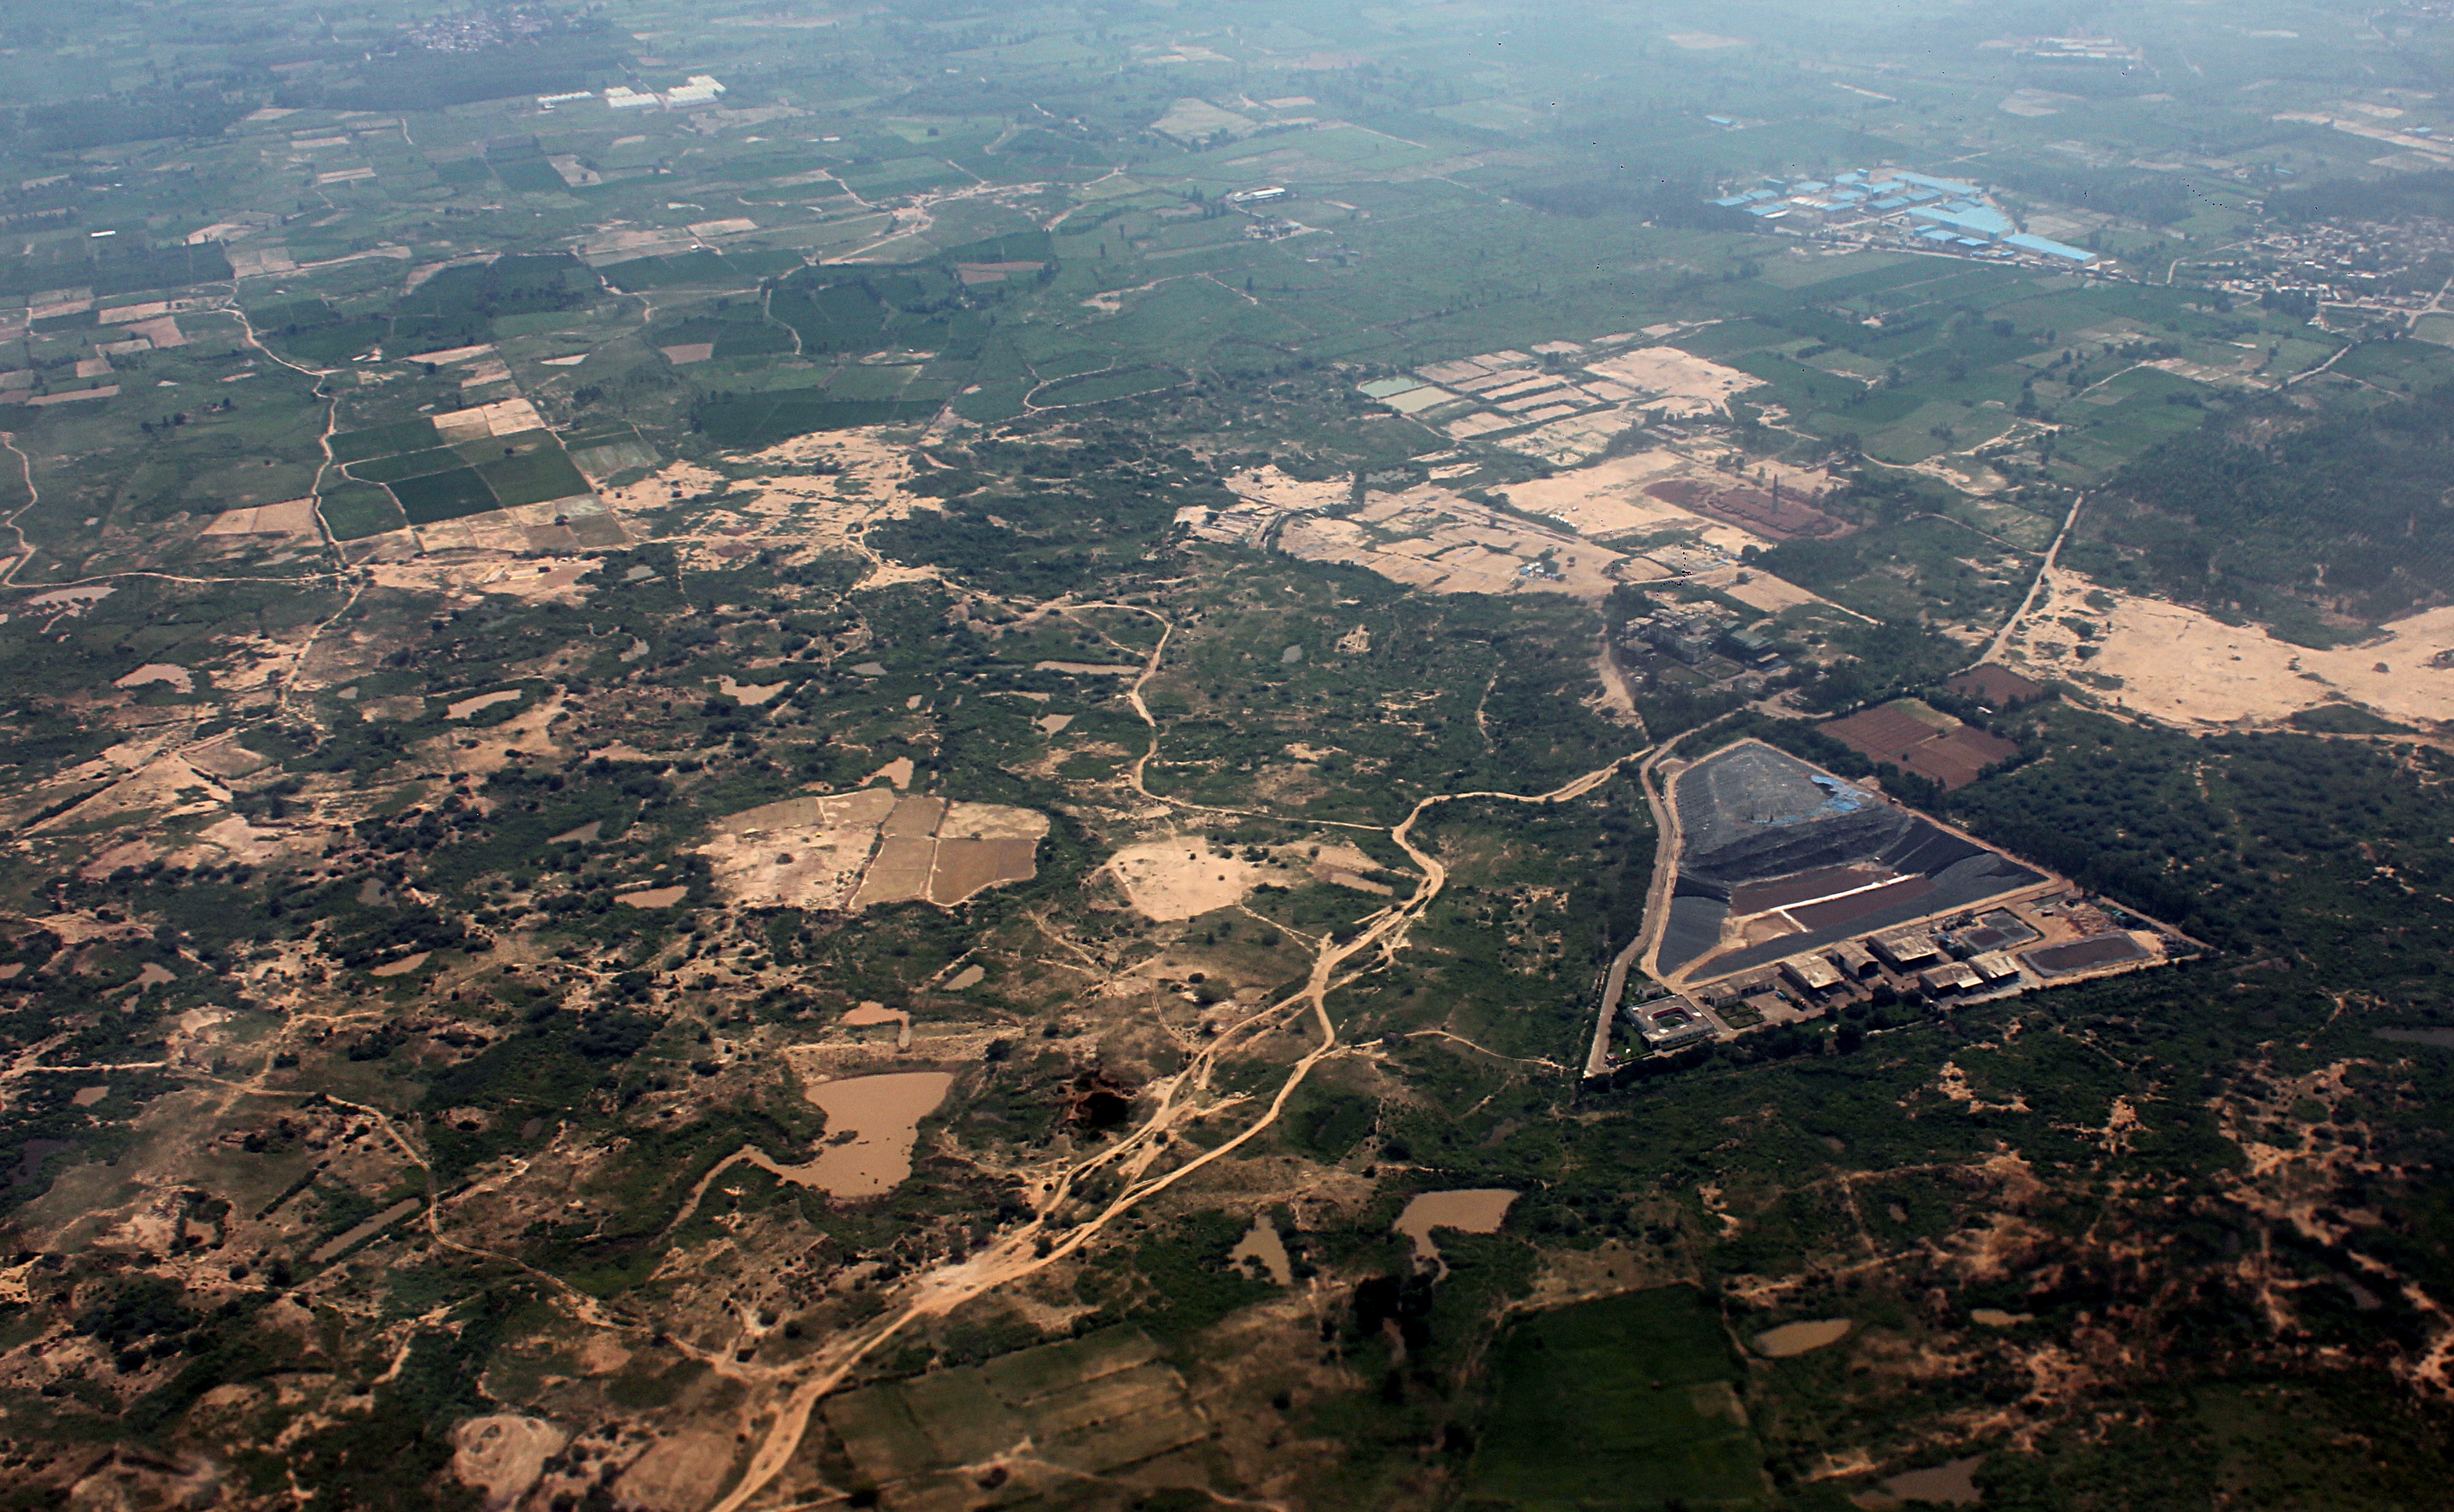 Chandigarh and surrounding aerial photo 04-2016 img3